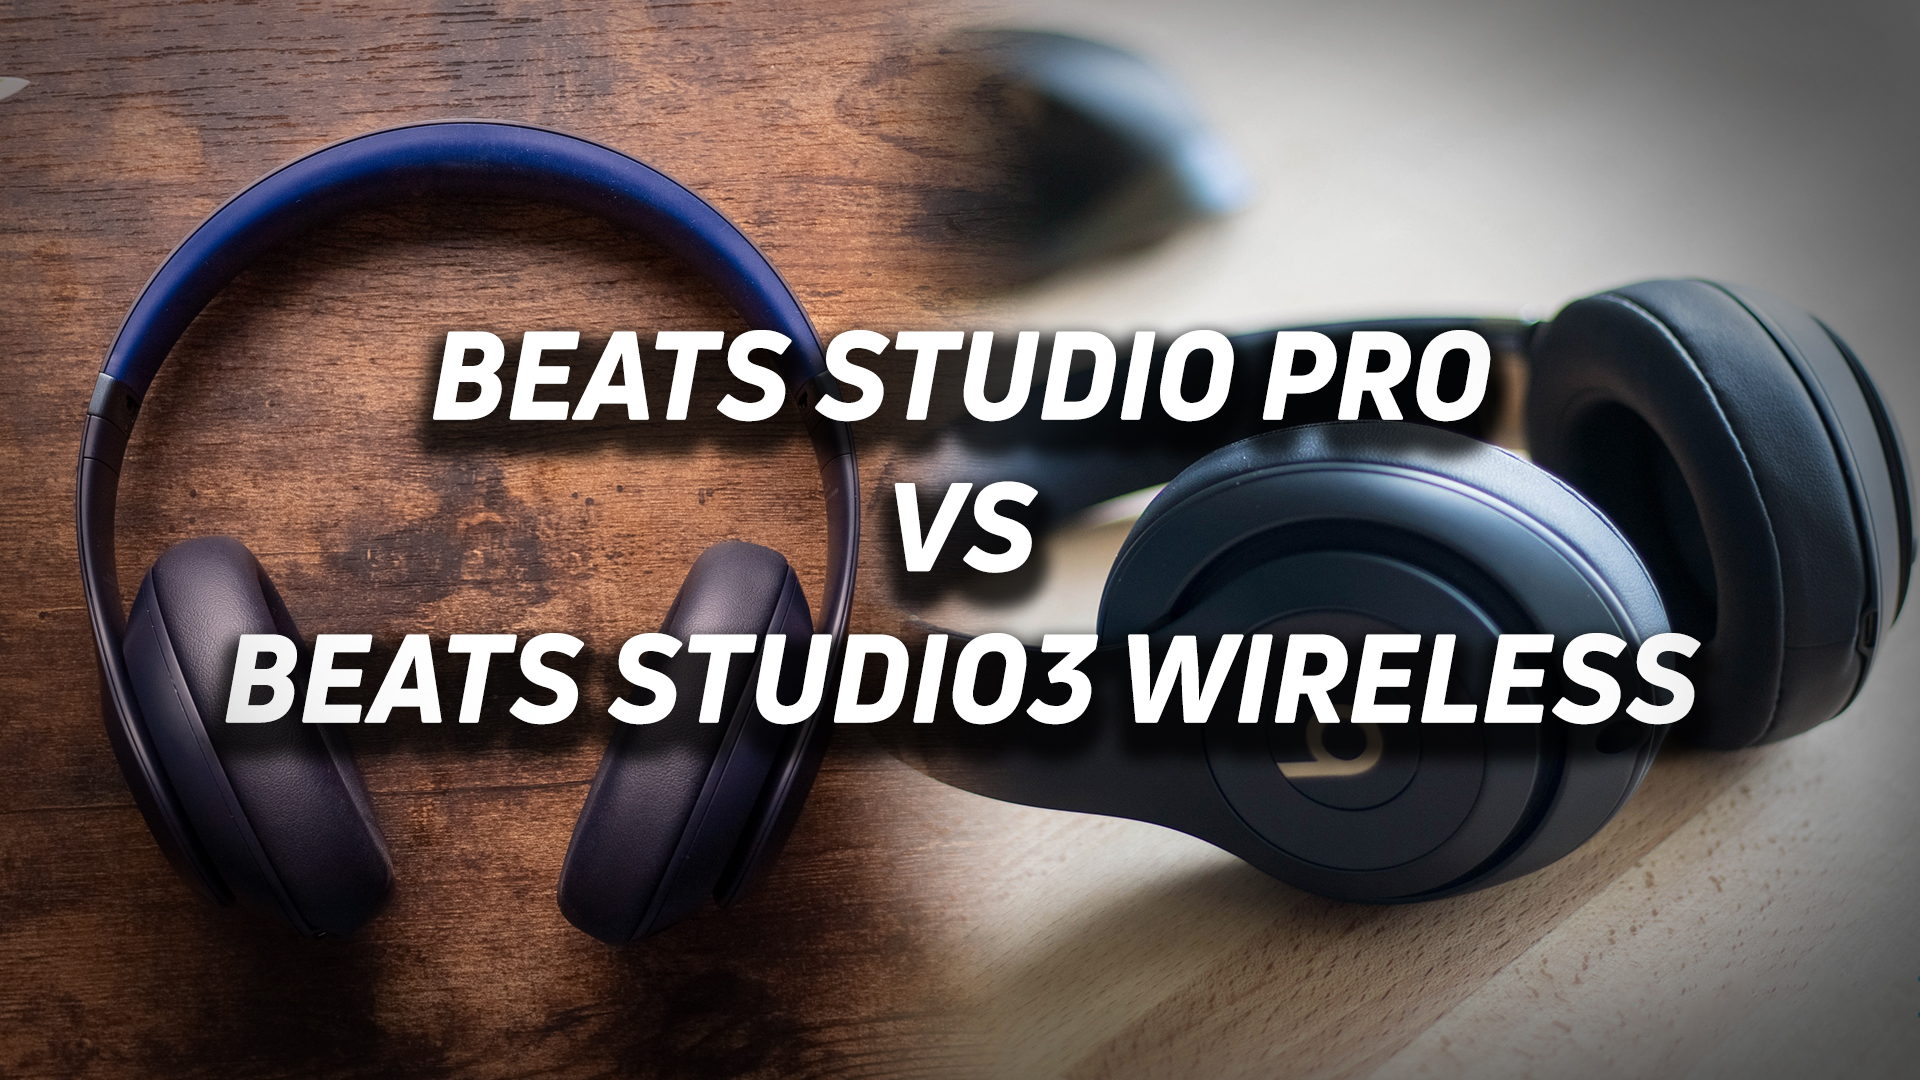 Beats Studio Pro versus Beats Studio3 Wireless.